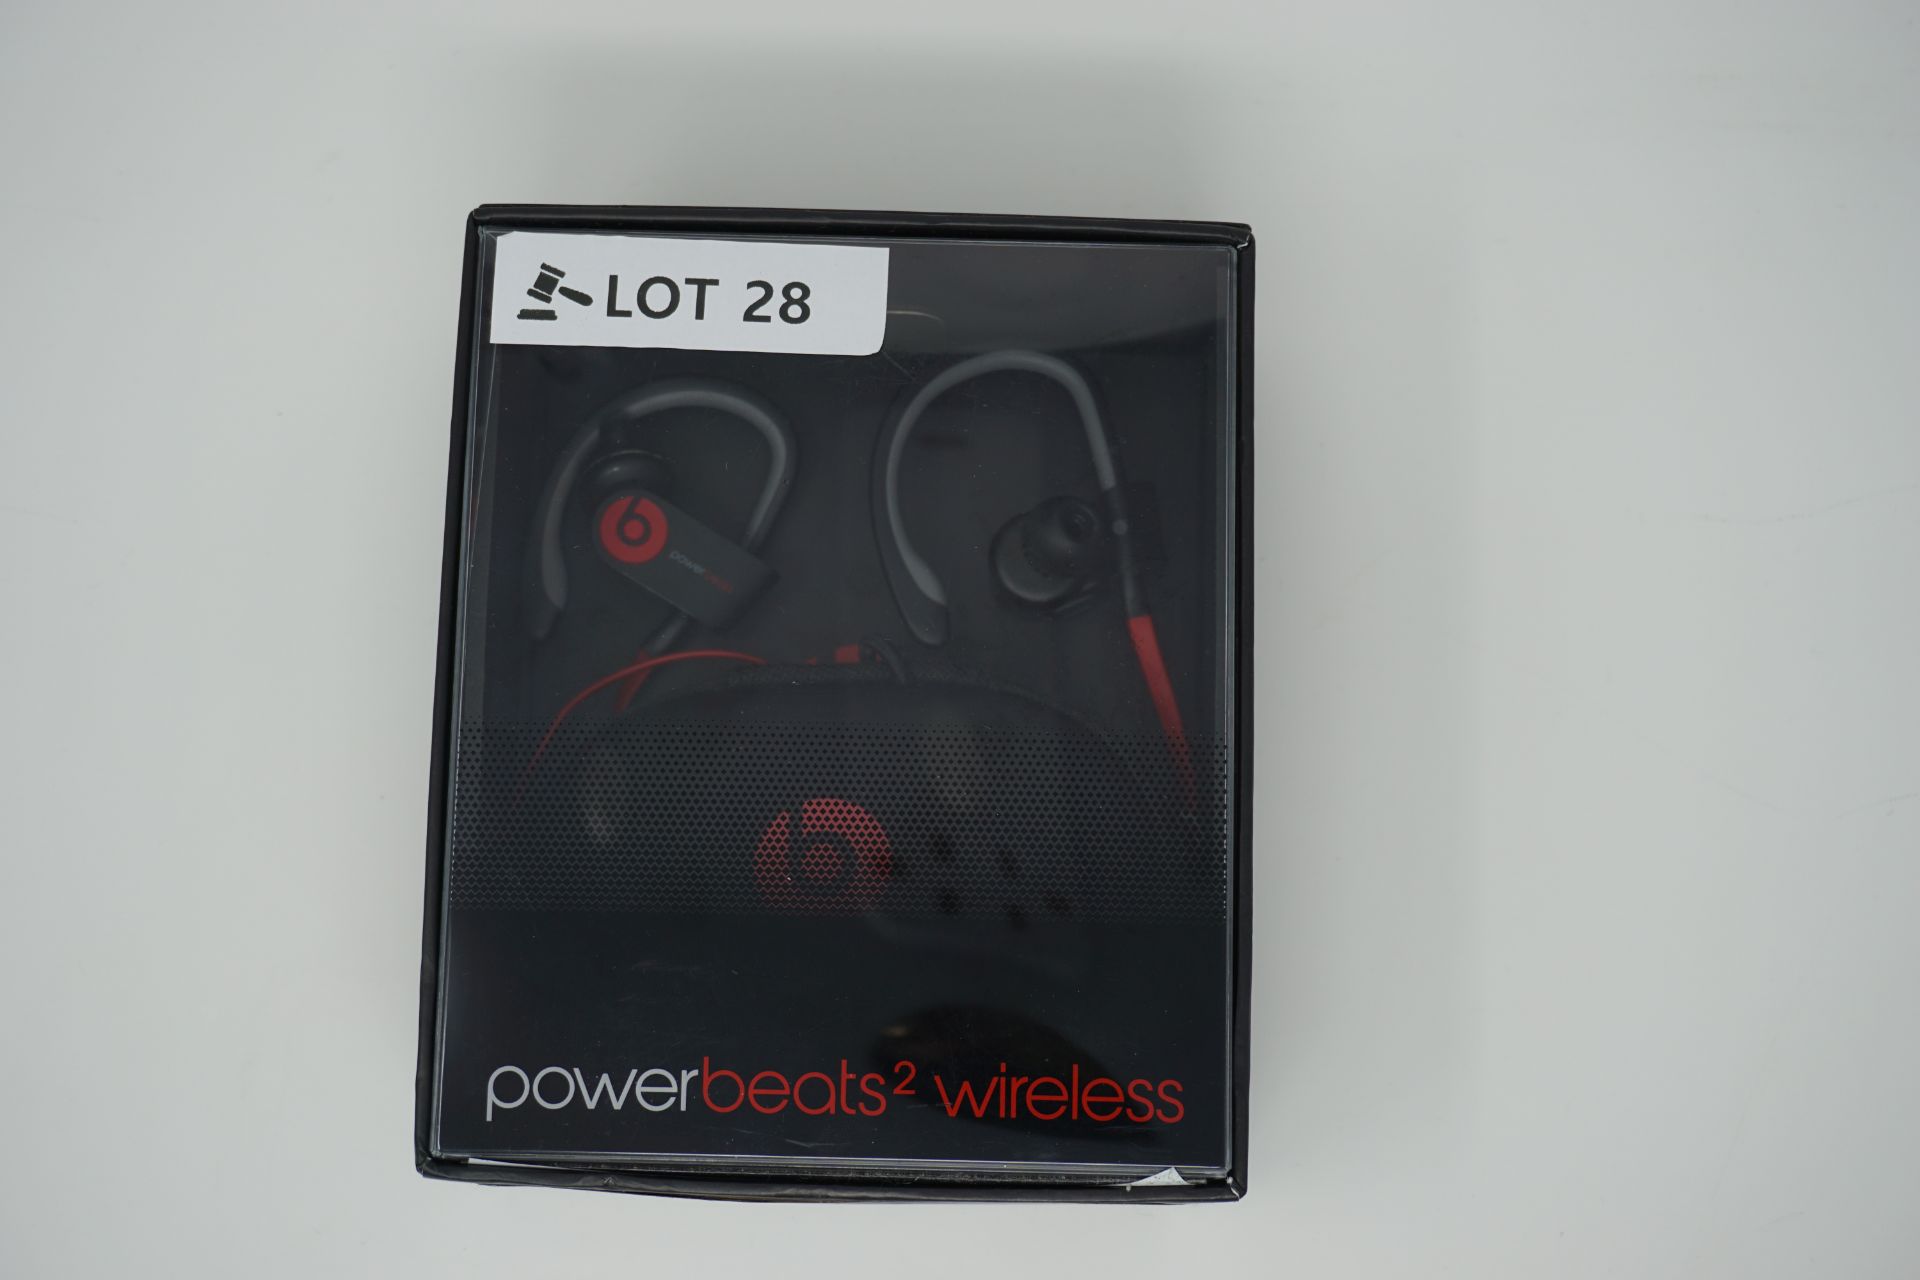 rrp £129.99 beats by dr dre powerbeats 2 wireless earphones -black